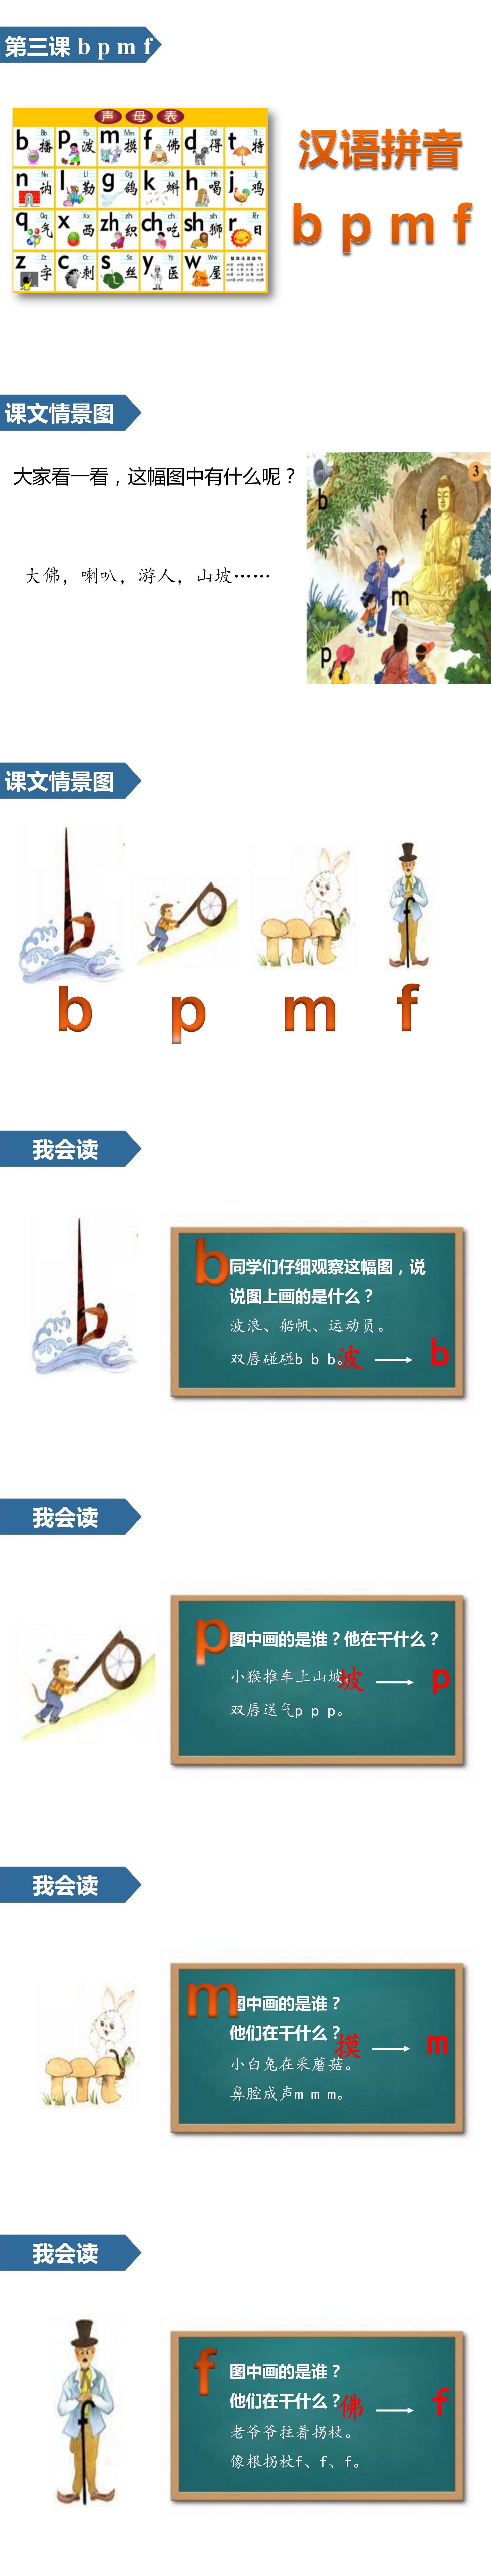 小学语文课件《bpmf》汉语拼音PPT模板PPT课件下载